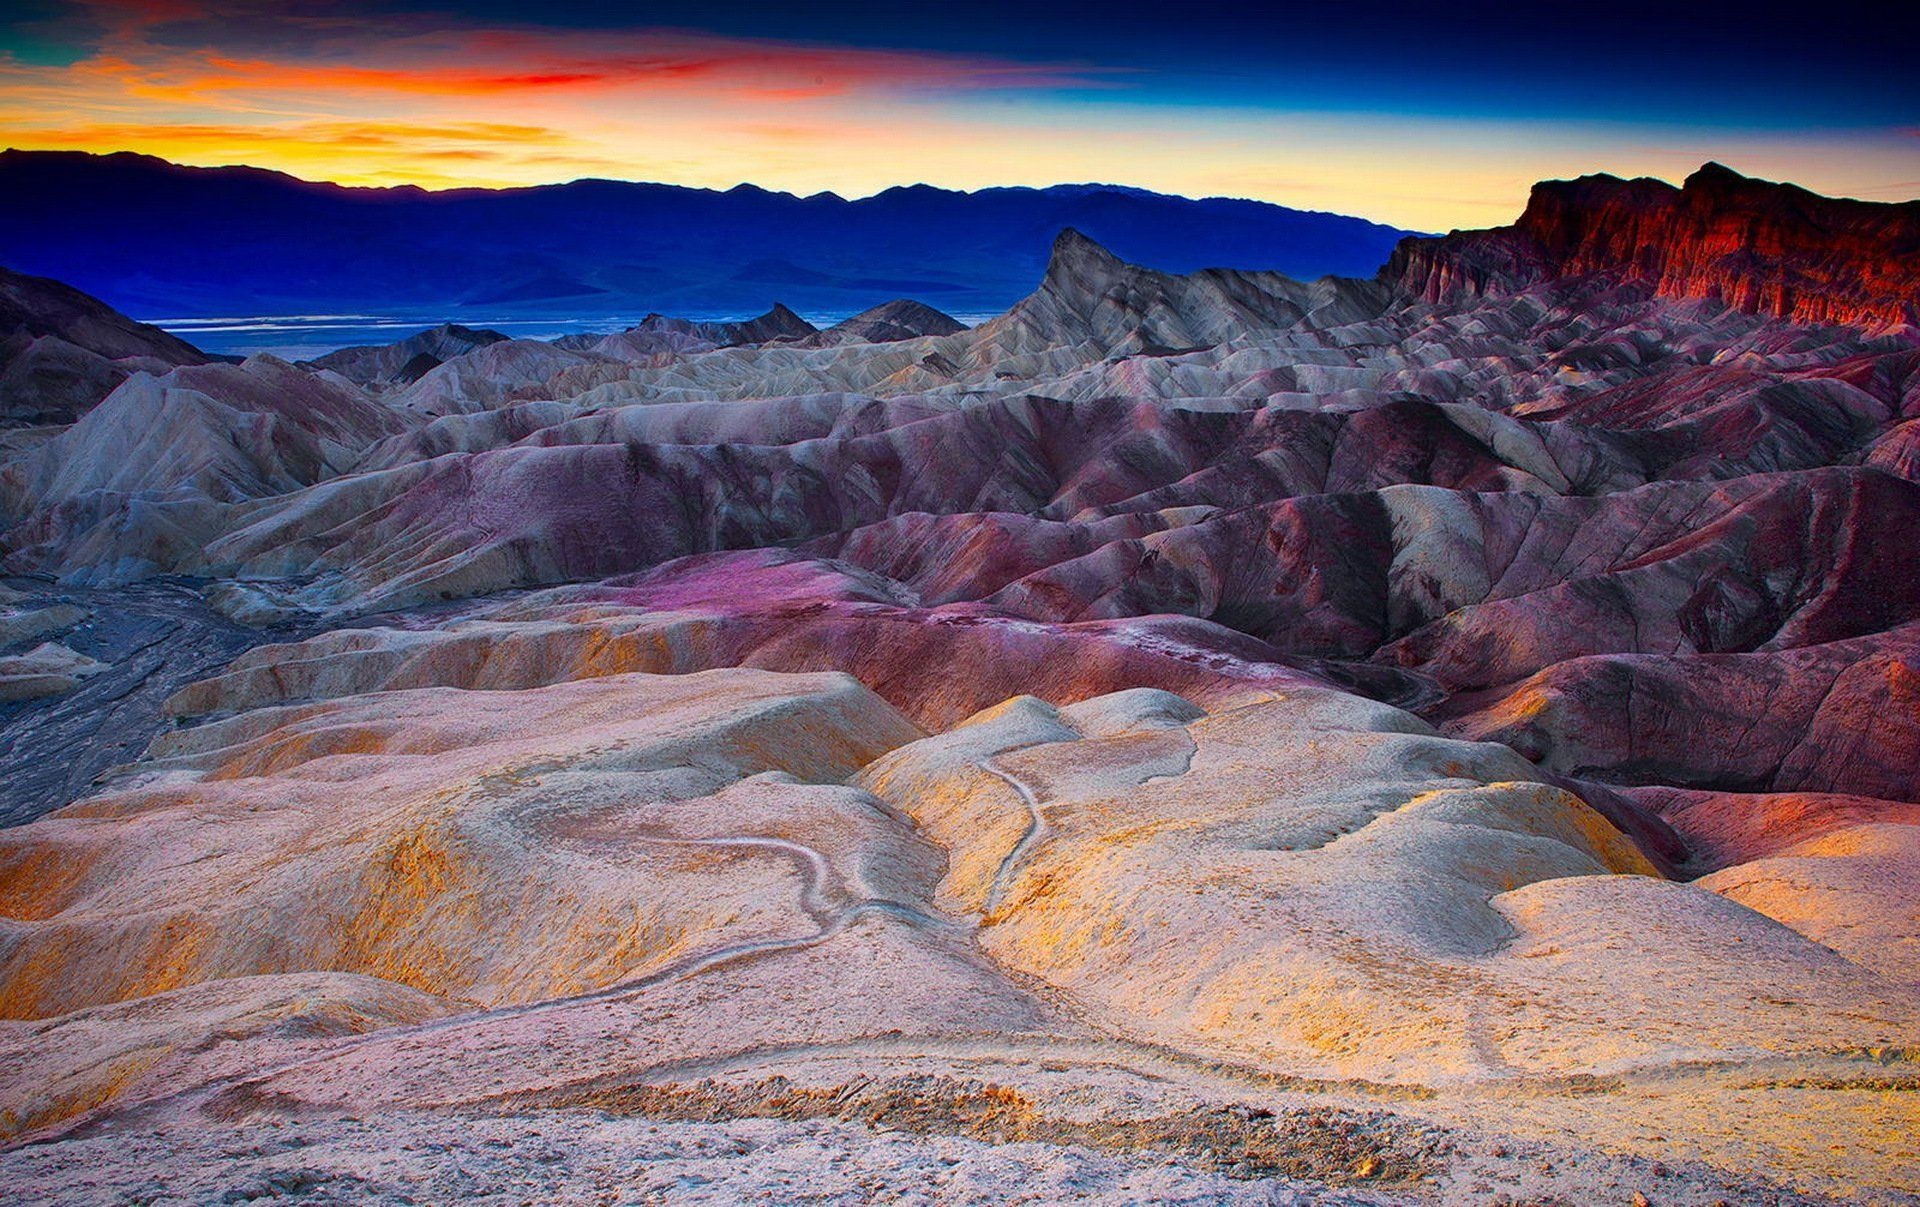 Death Valley wallpapers, Desert beauty, Scenic backgrounds, Nature's wonders, 1920x1210 HD Desktop